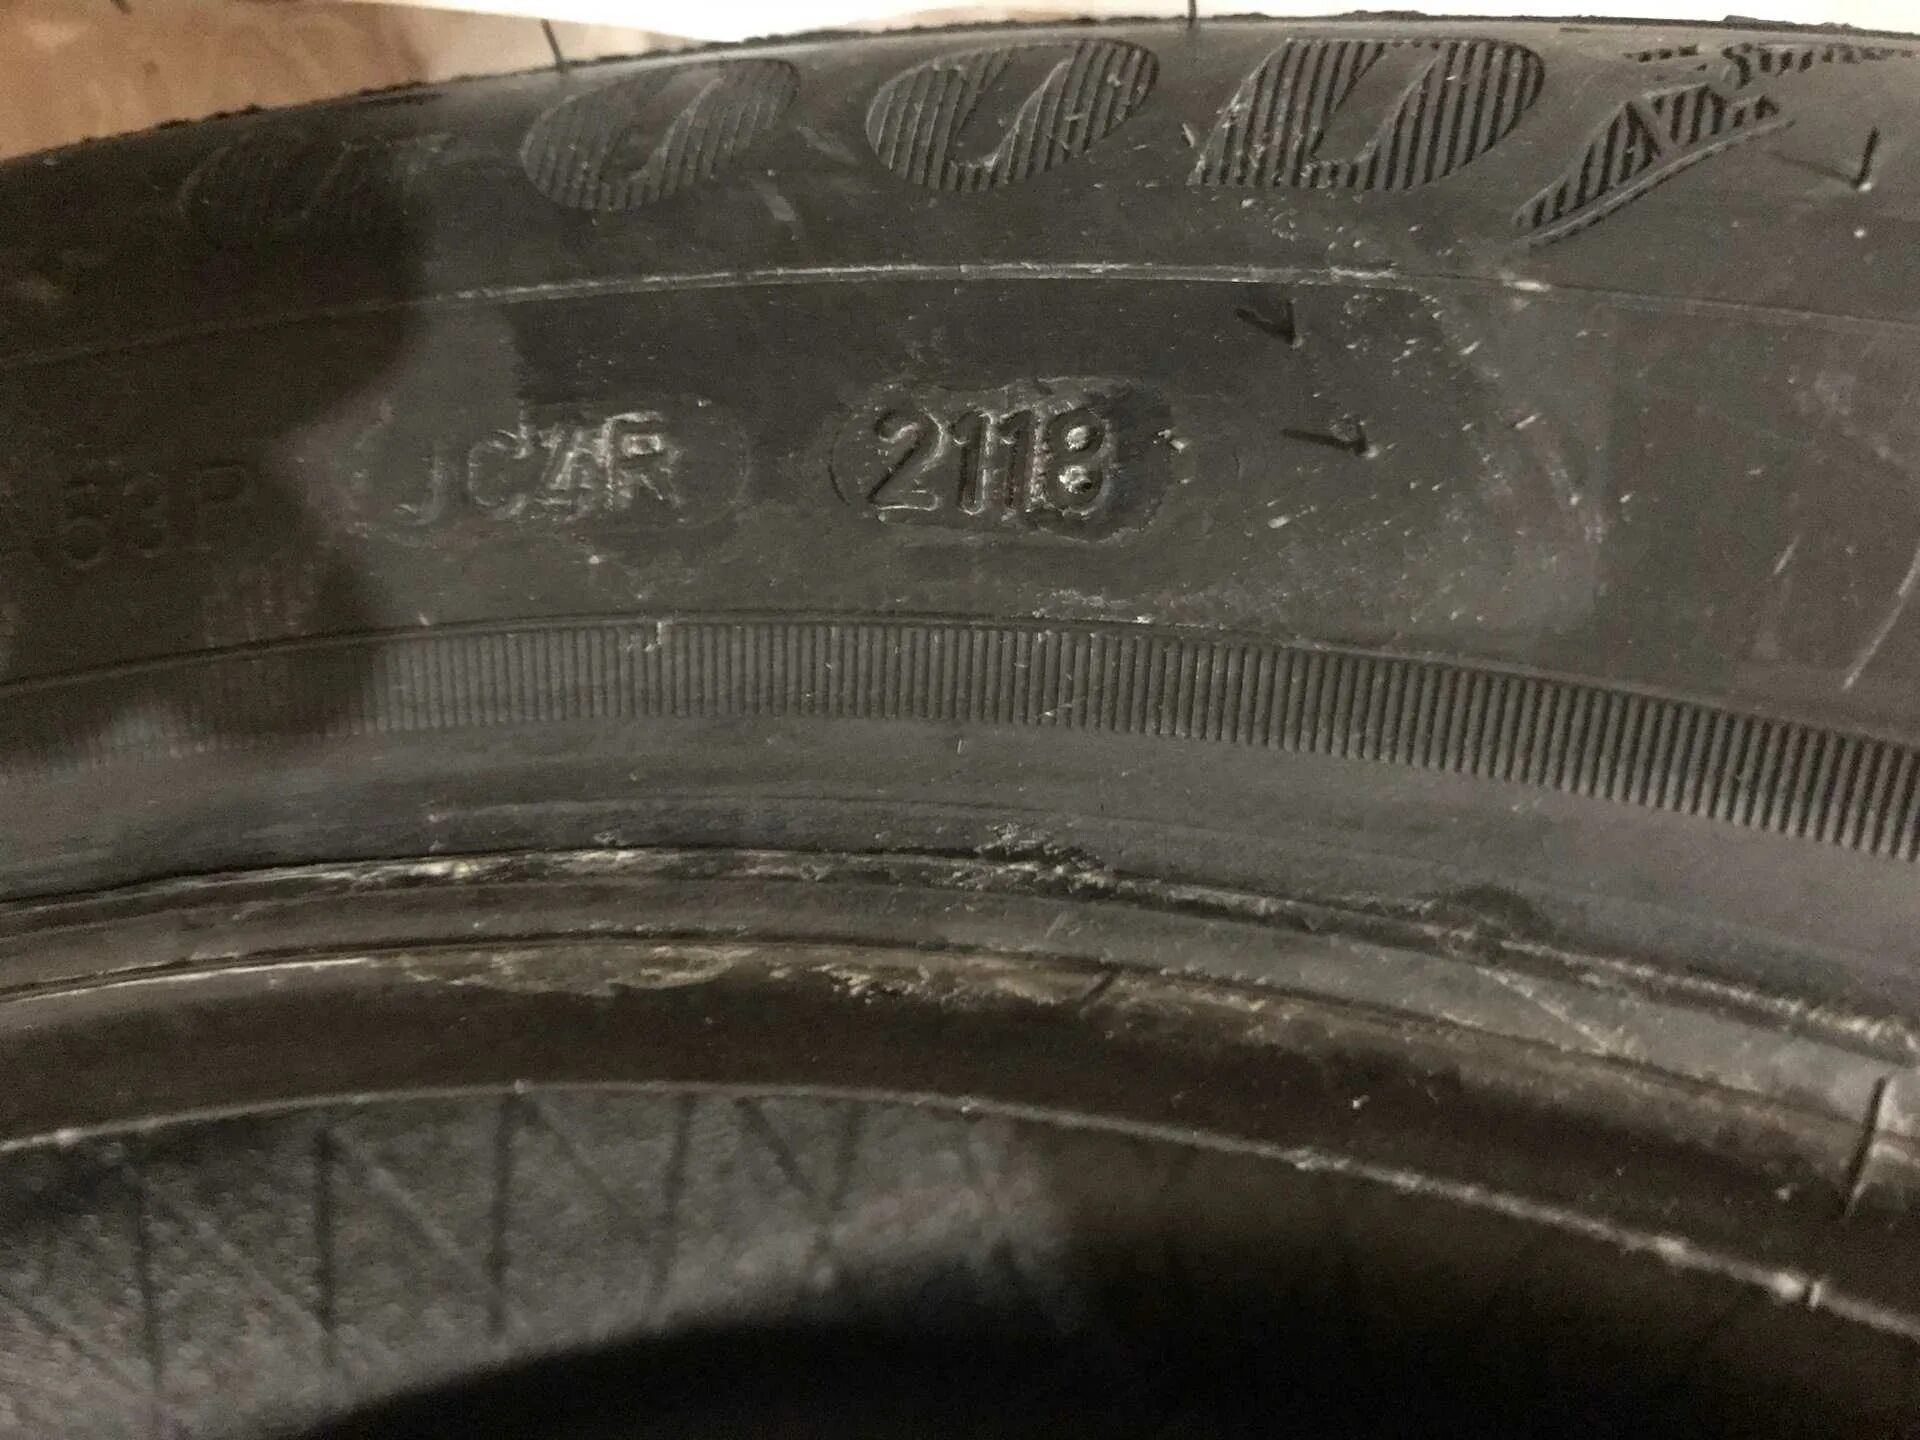 Дата шин где указана. Дата выпуска резины Гудиер. Год выпуска шин Dunlop. Дата выпуска шины Dunlop. Как определить год выпуска резины Гудиер.